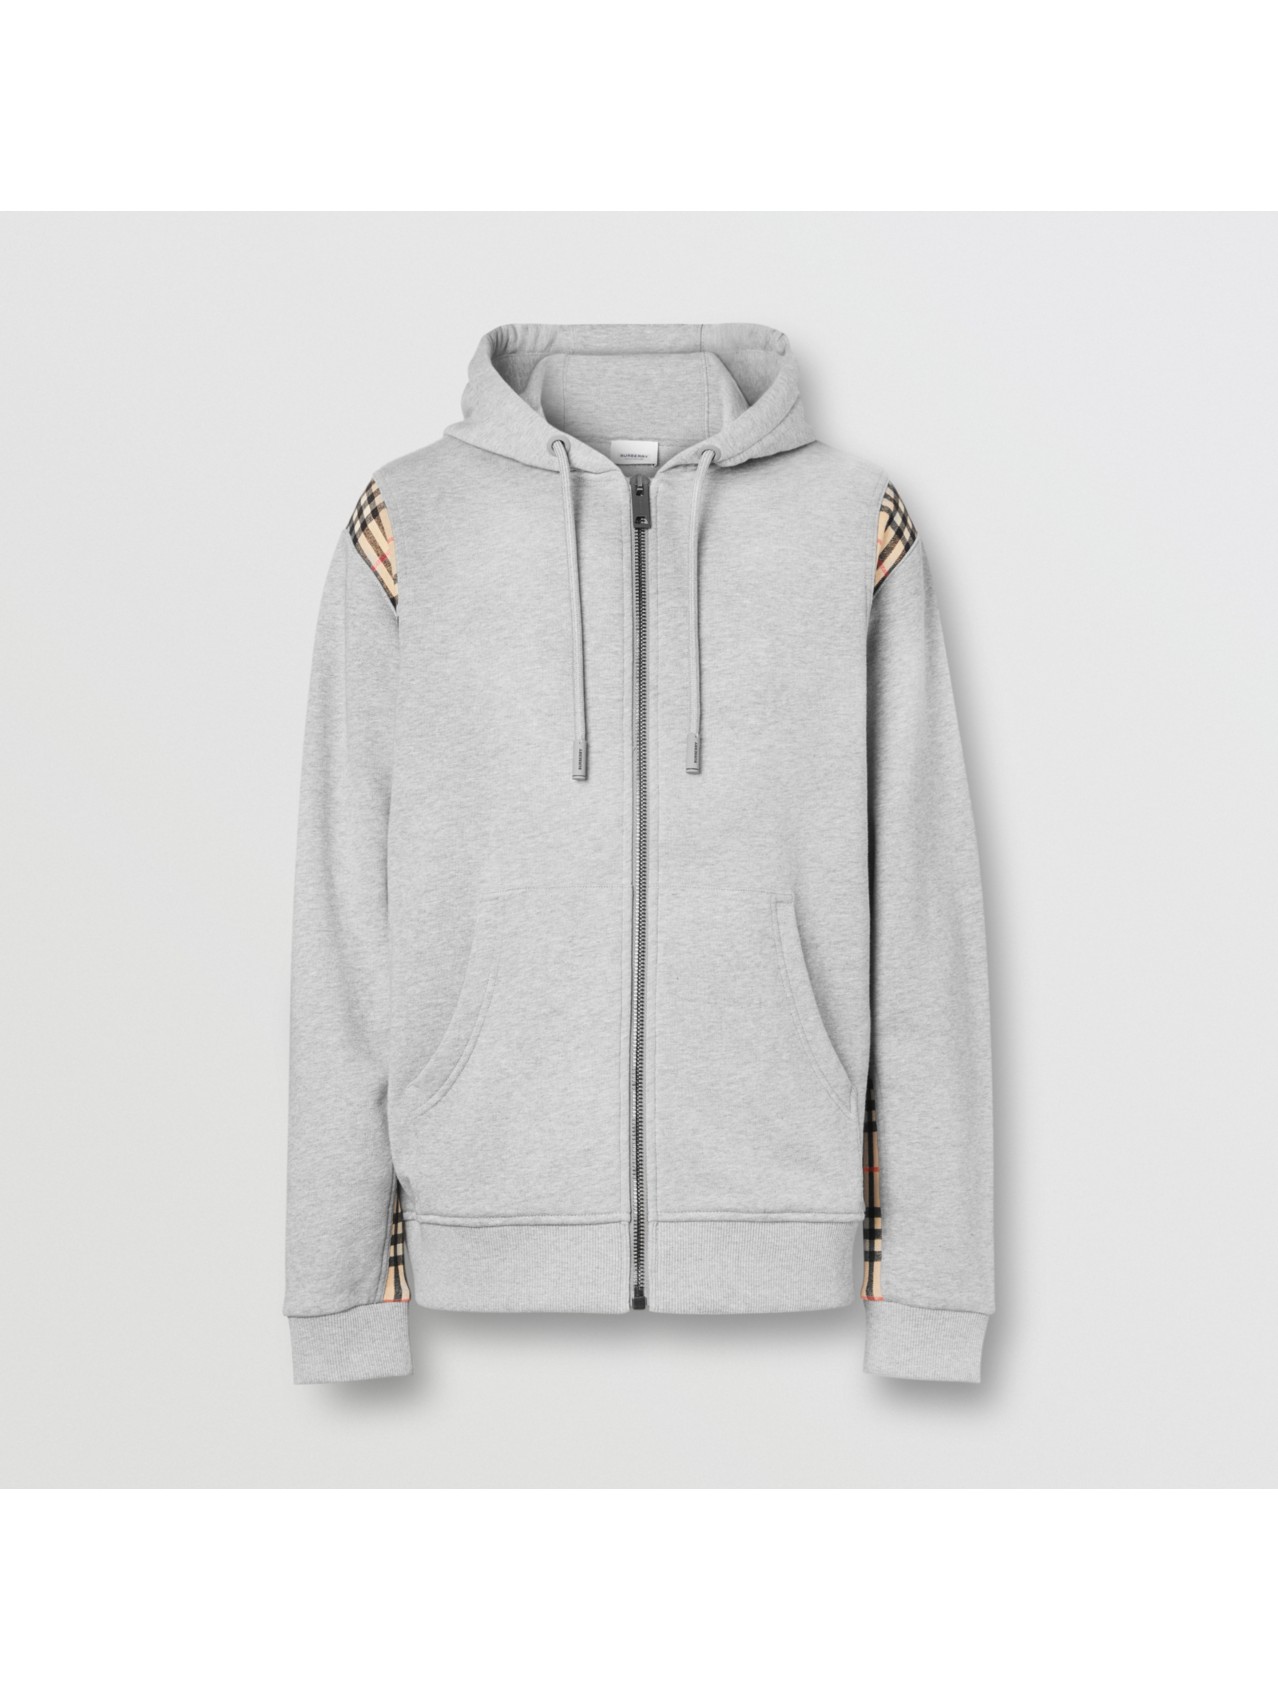 Men’s Designer Hoodies & Sweatshirts | Burberry® Official